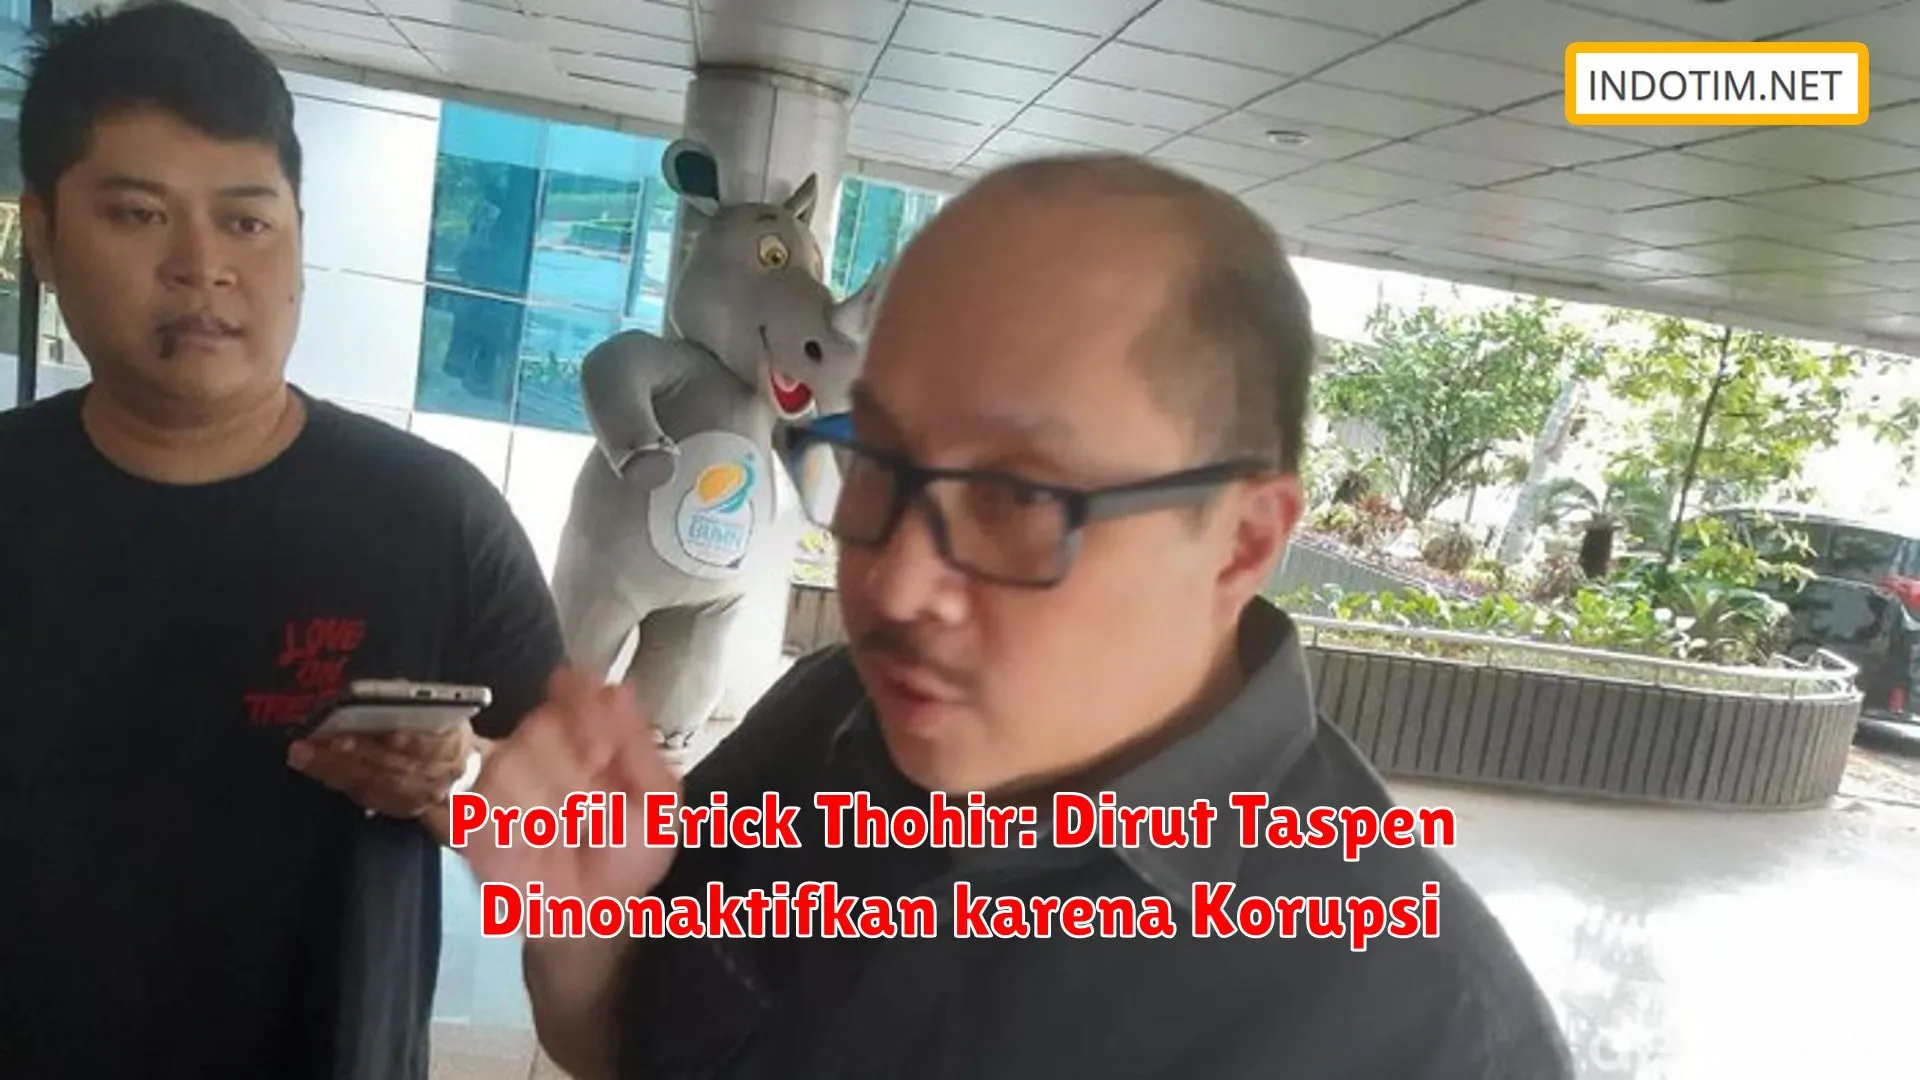 Profil Erick Thohir: Dirut Taspen Dinonaktifkan karena Korupsi